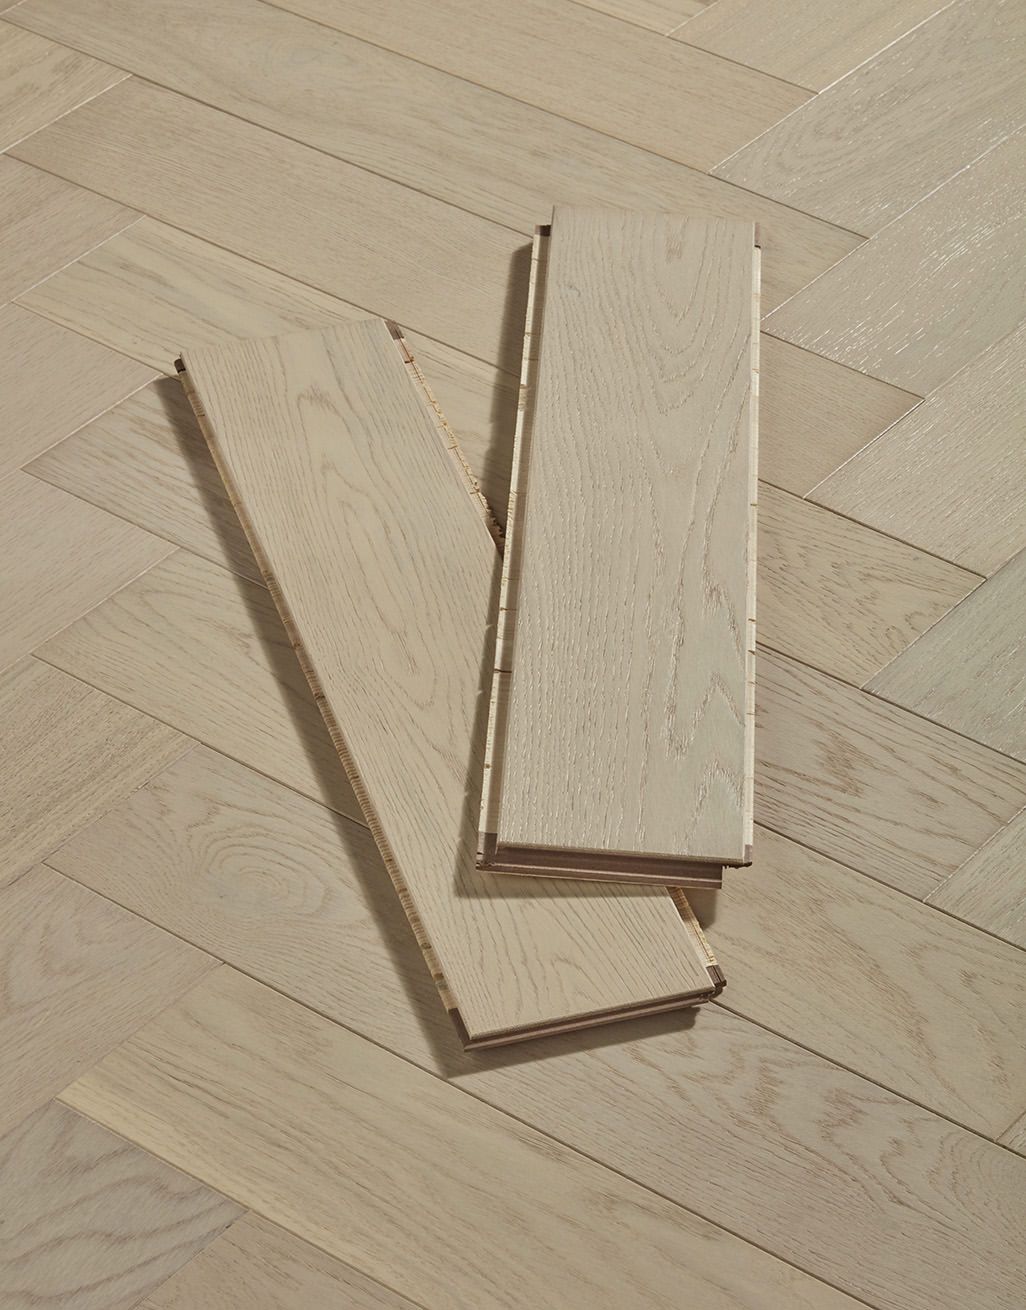 Marylebone Chantilly Lace Oak Brushed & Lacquered Engineered Wood Flooring 3